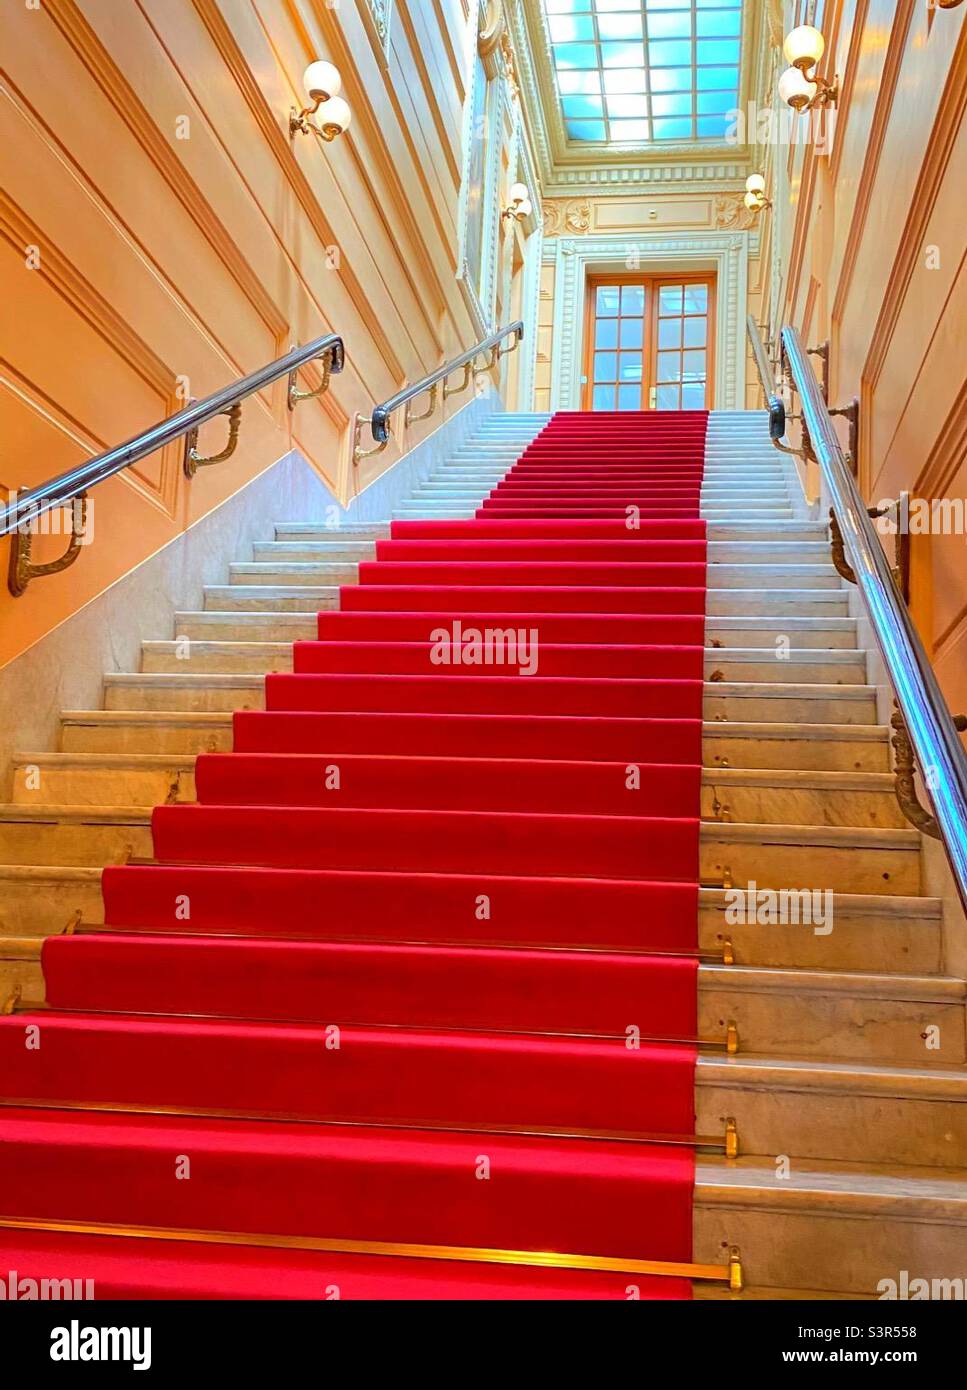 Escalier de marbre avec un chemin rouge dans un casino de Monte Carlo. Marble staircase with a red path in a Monte Carlo casino Stock Photo